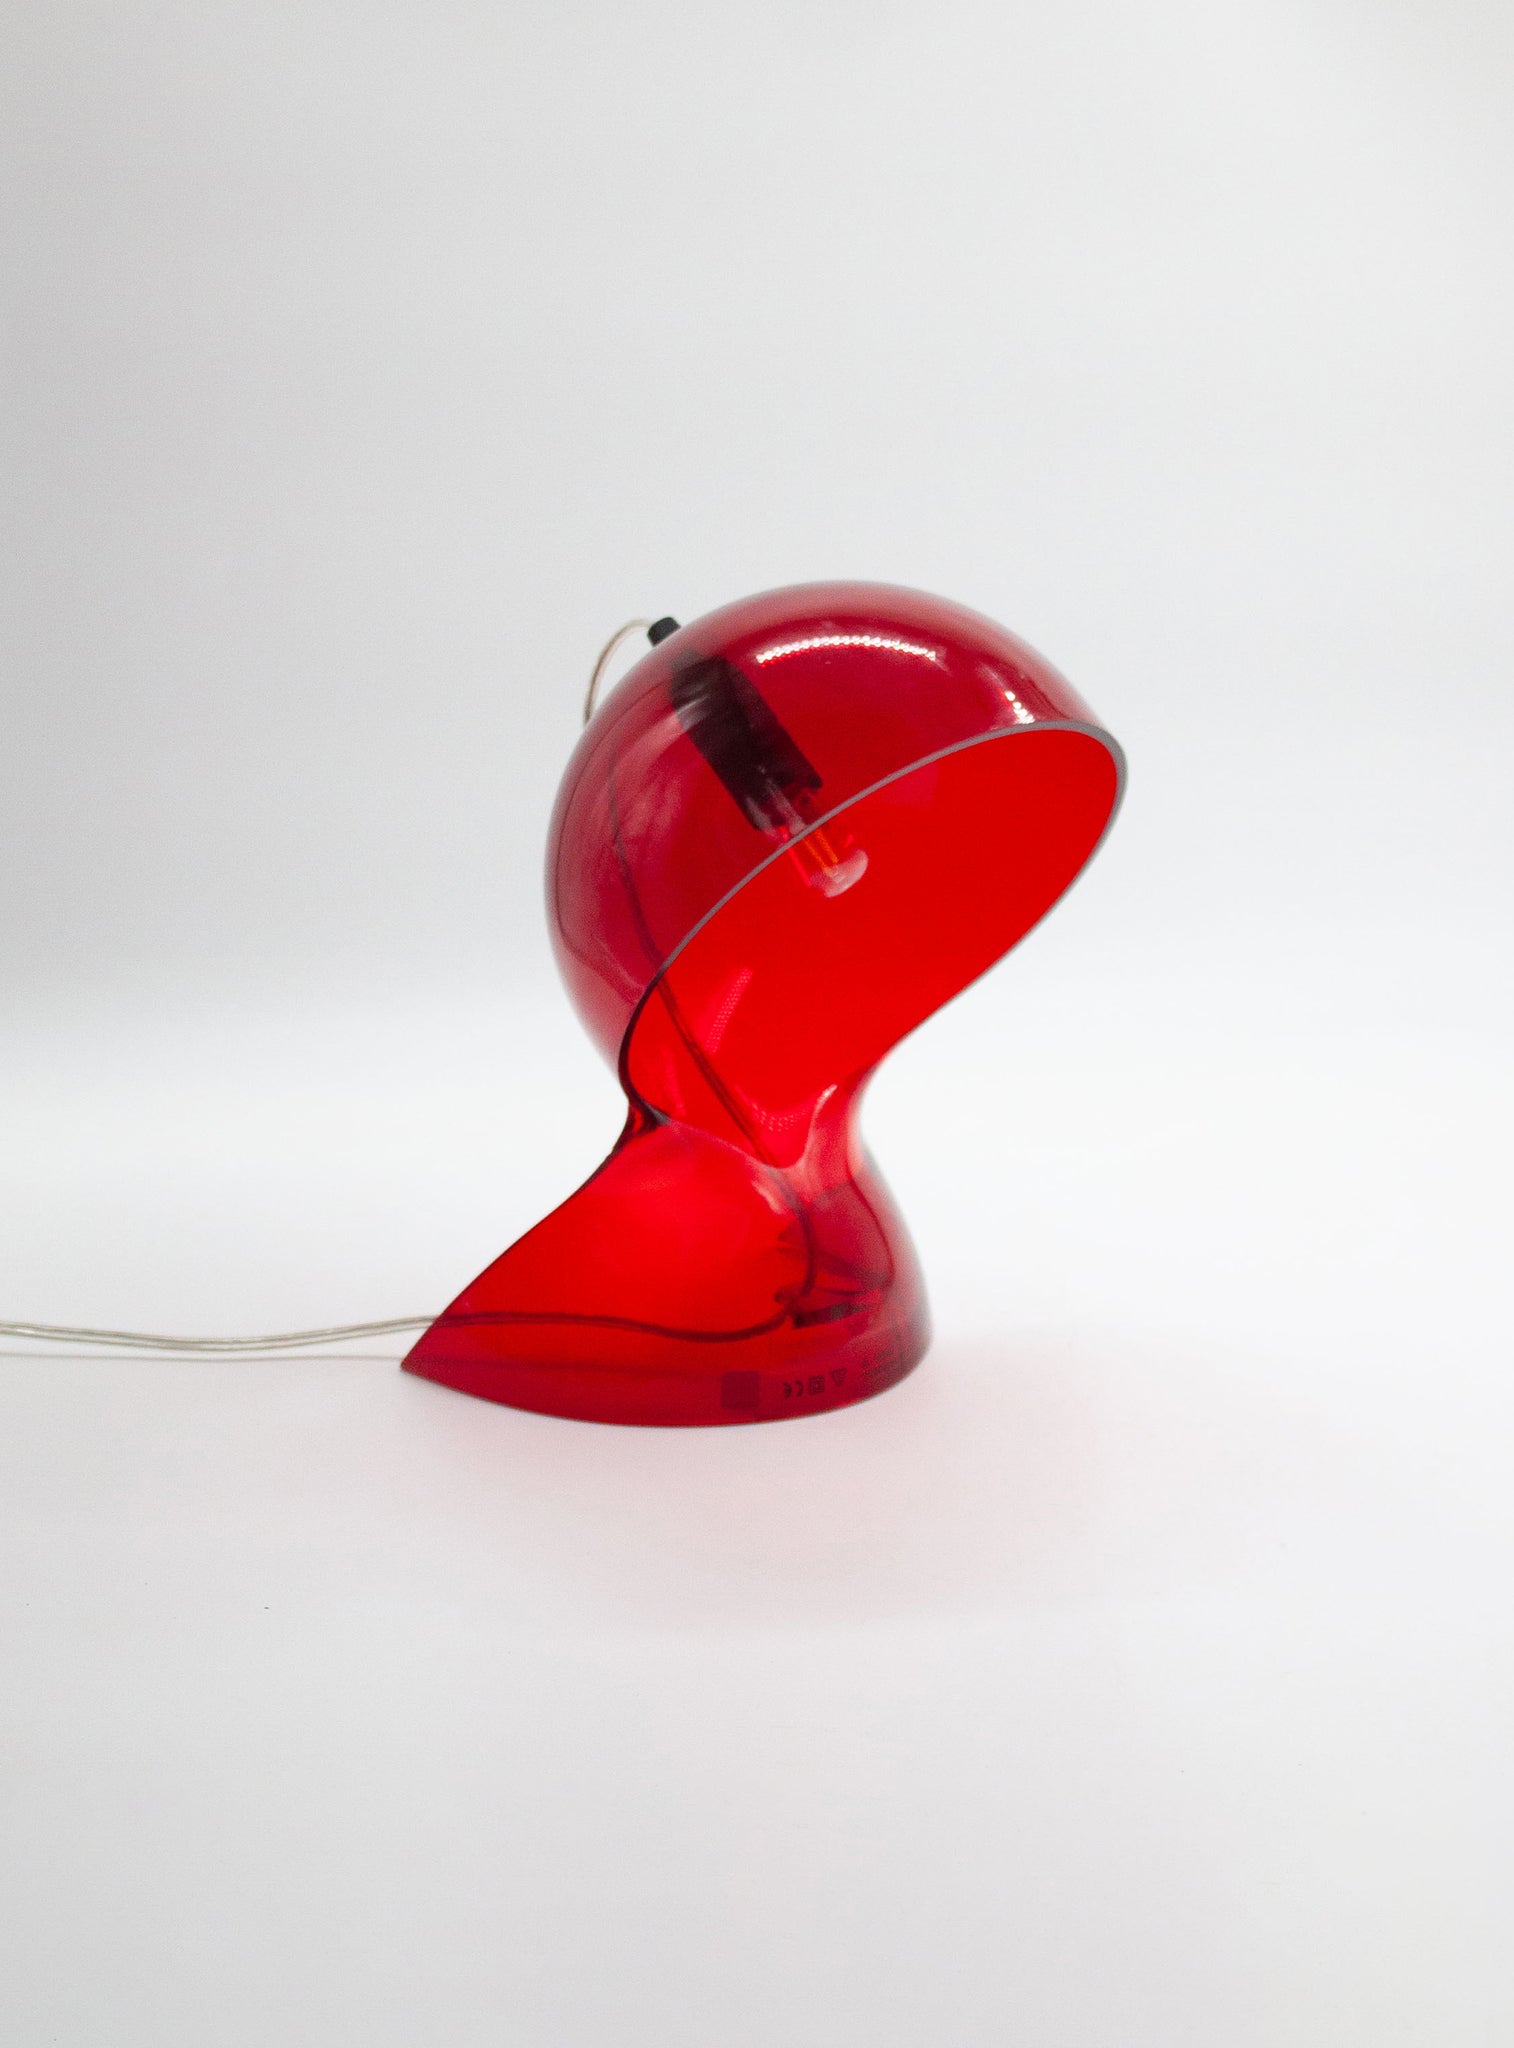 Artemide Dalù Desk Lamp by Vico Magistretti (Translucent Red)